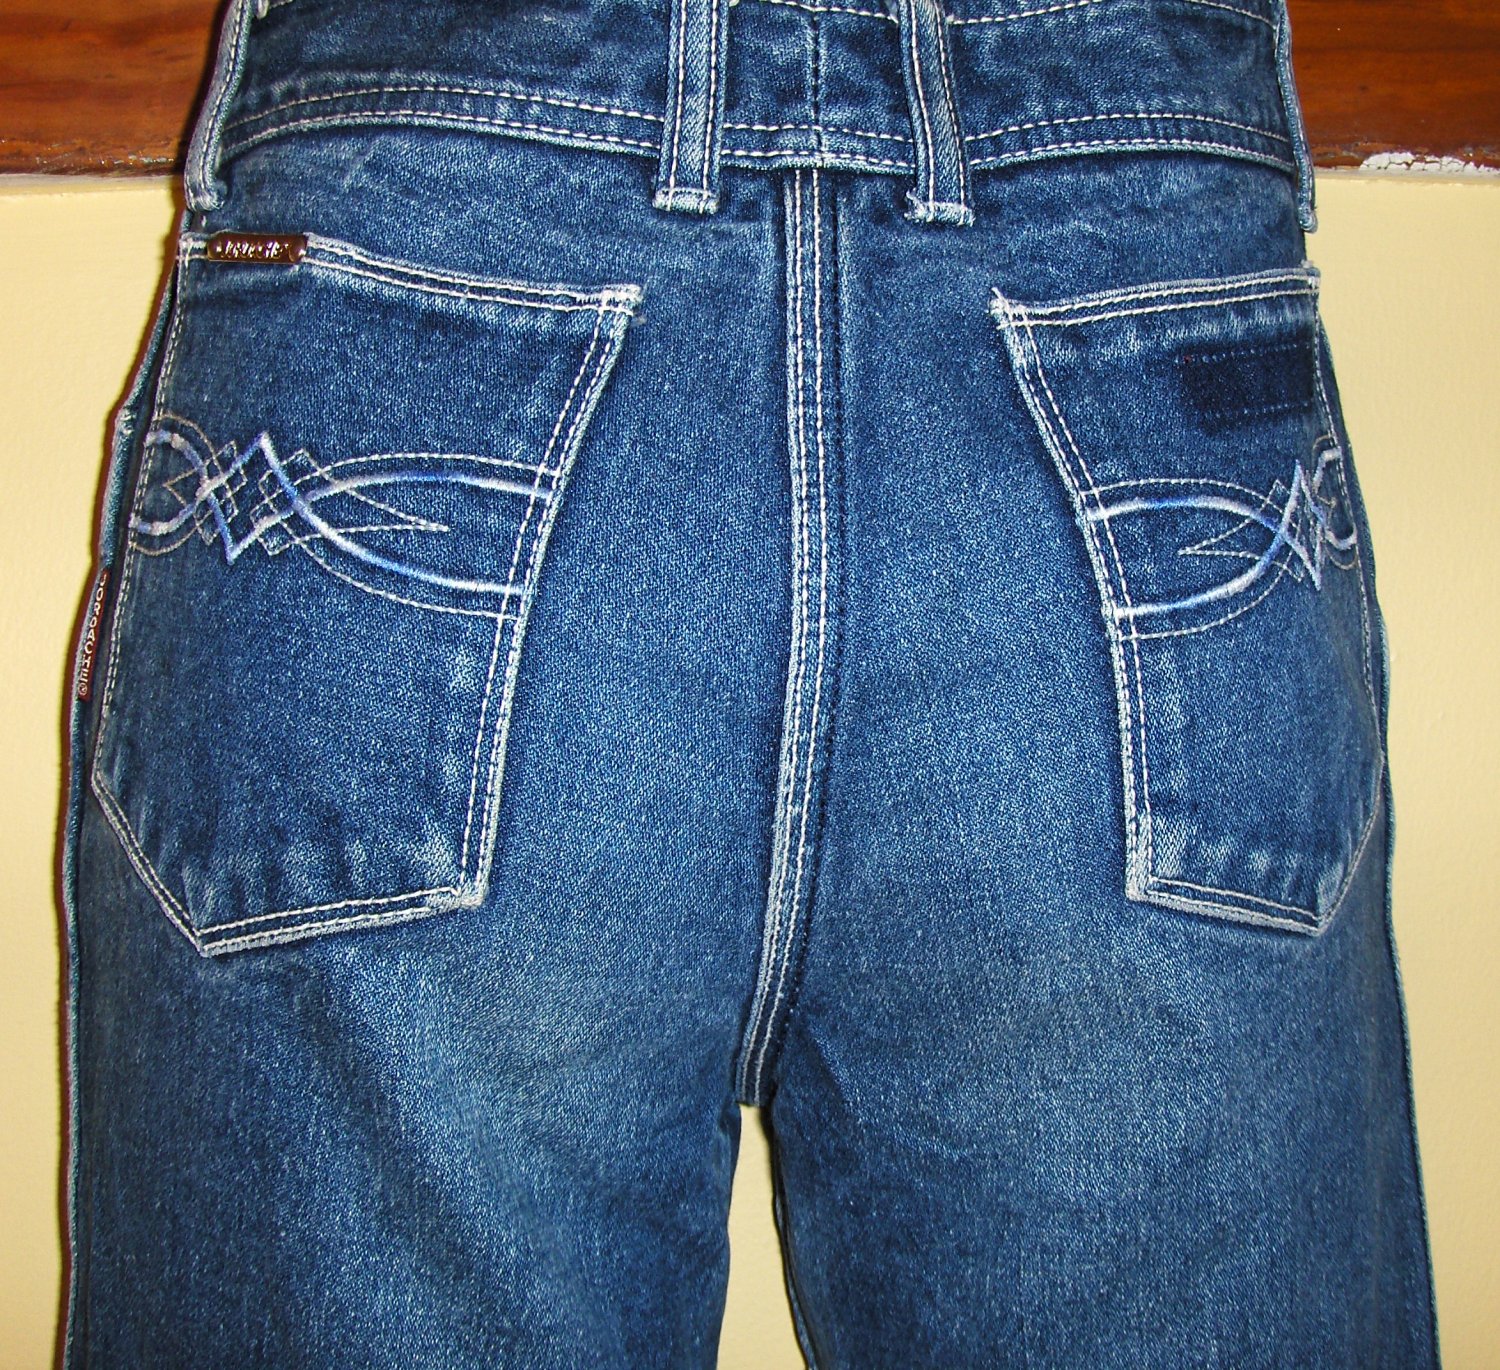 80s designer jeans brands